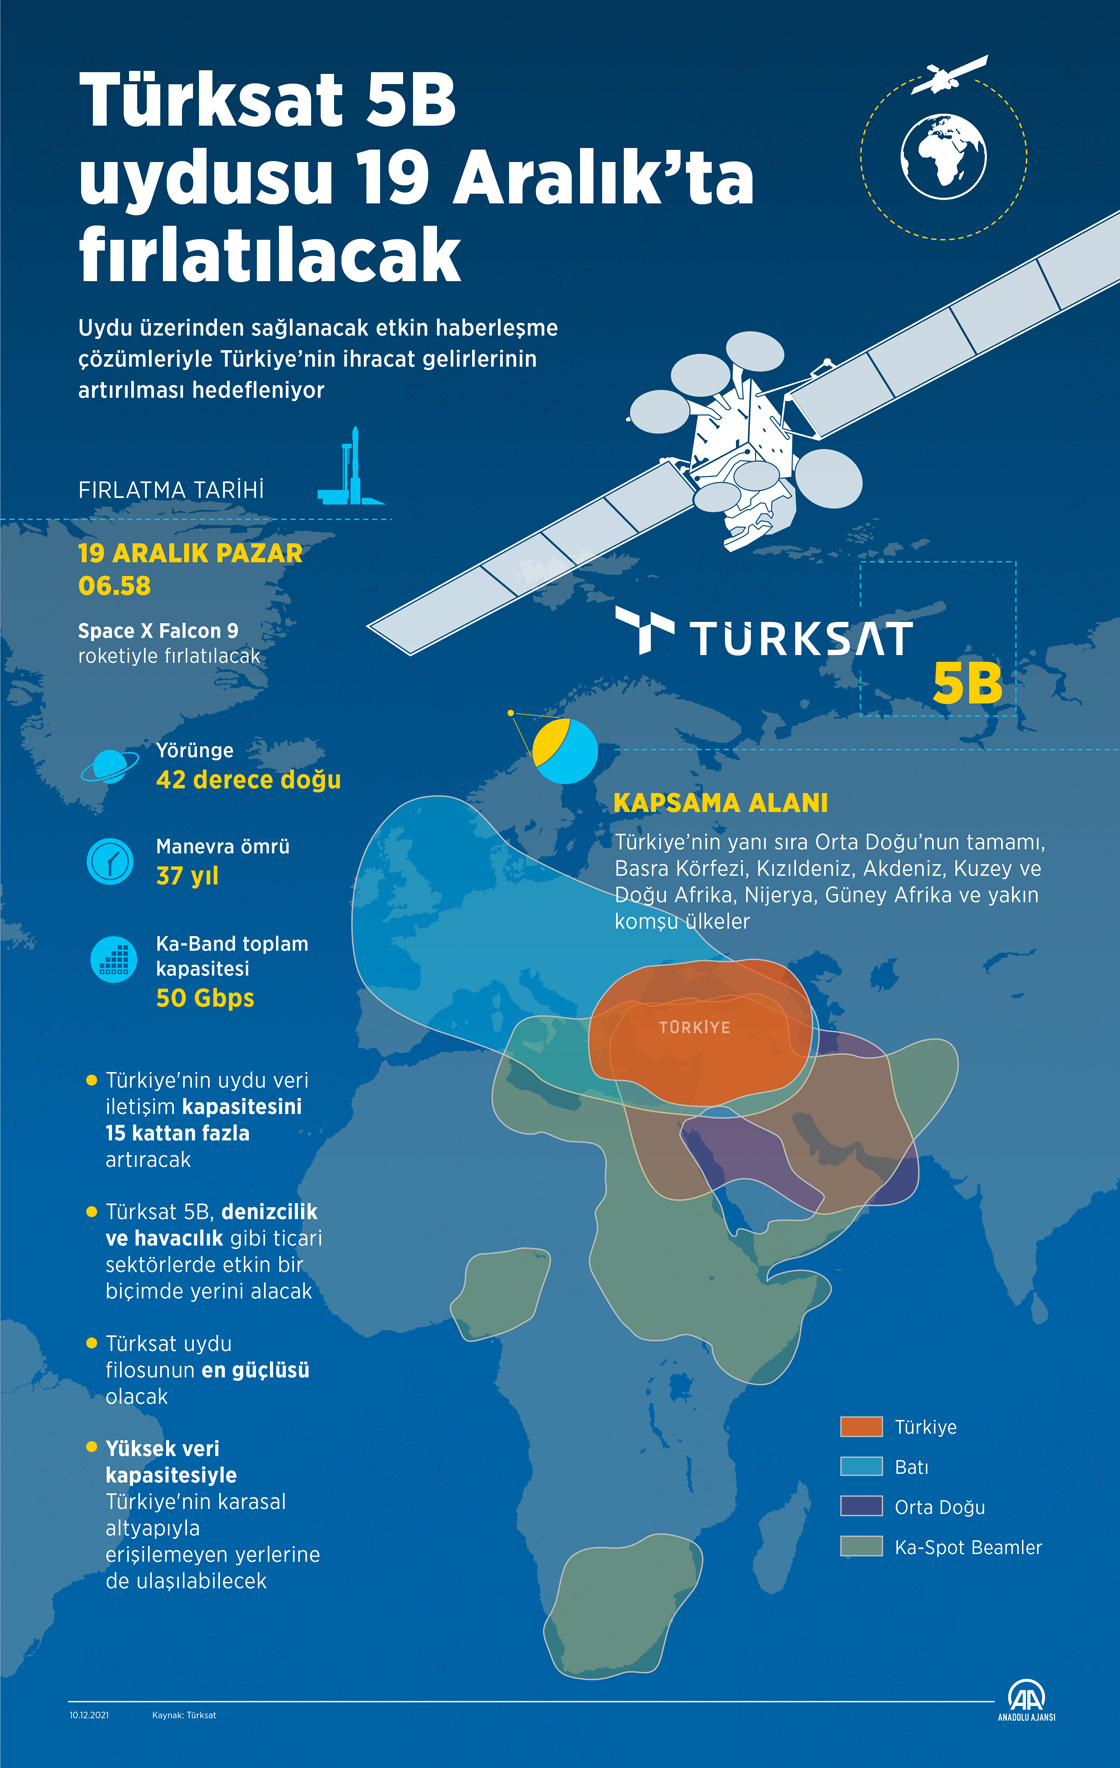  Türksat 5B uydusu 19 Aralık’ta fırlatılacak